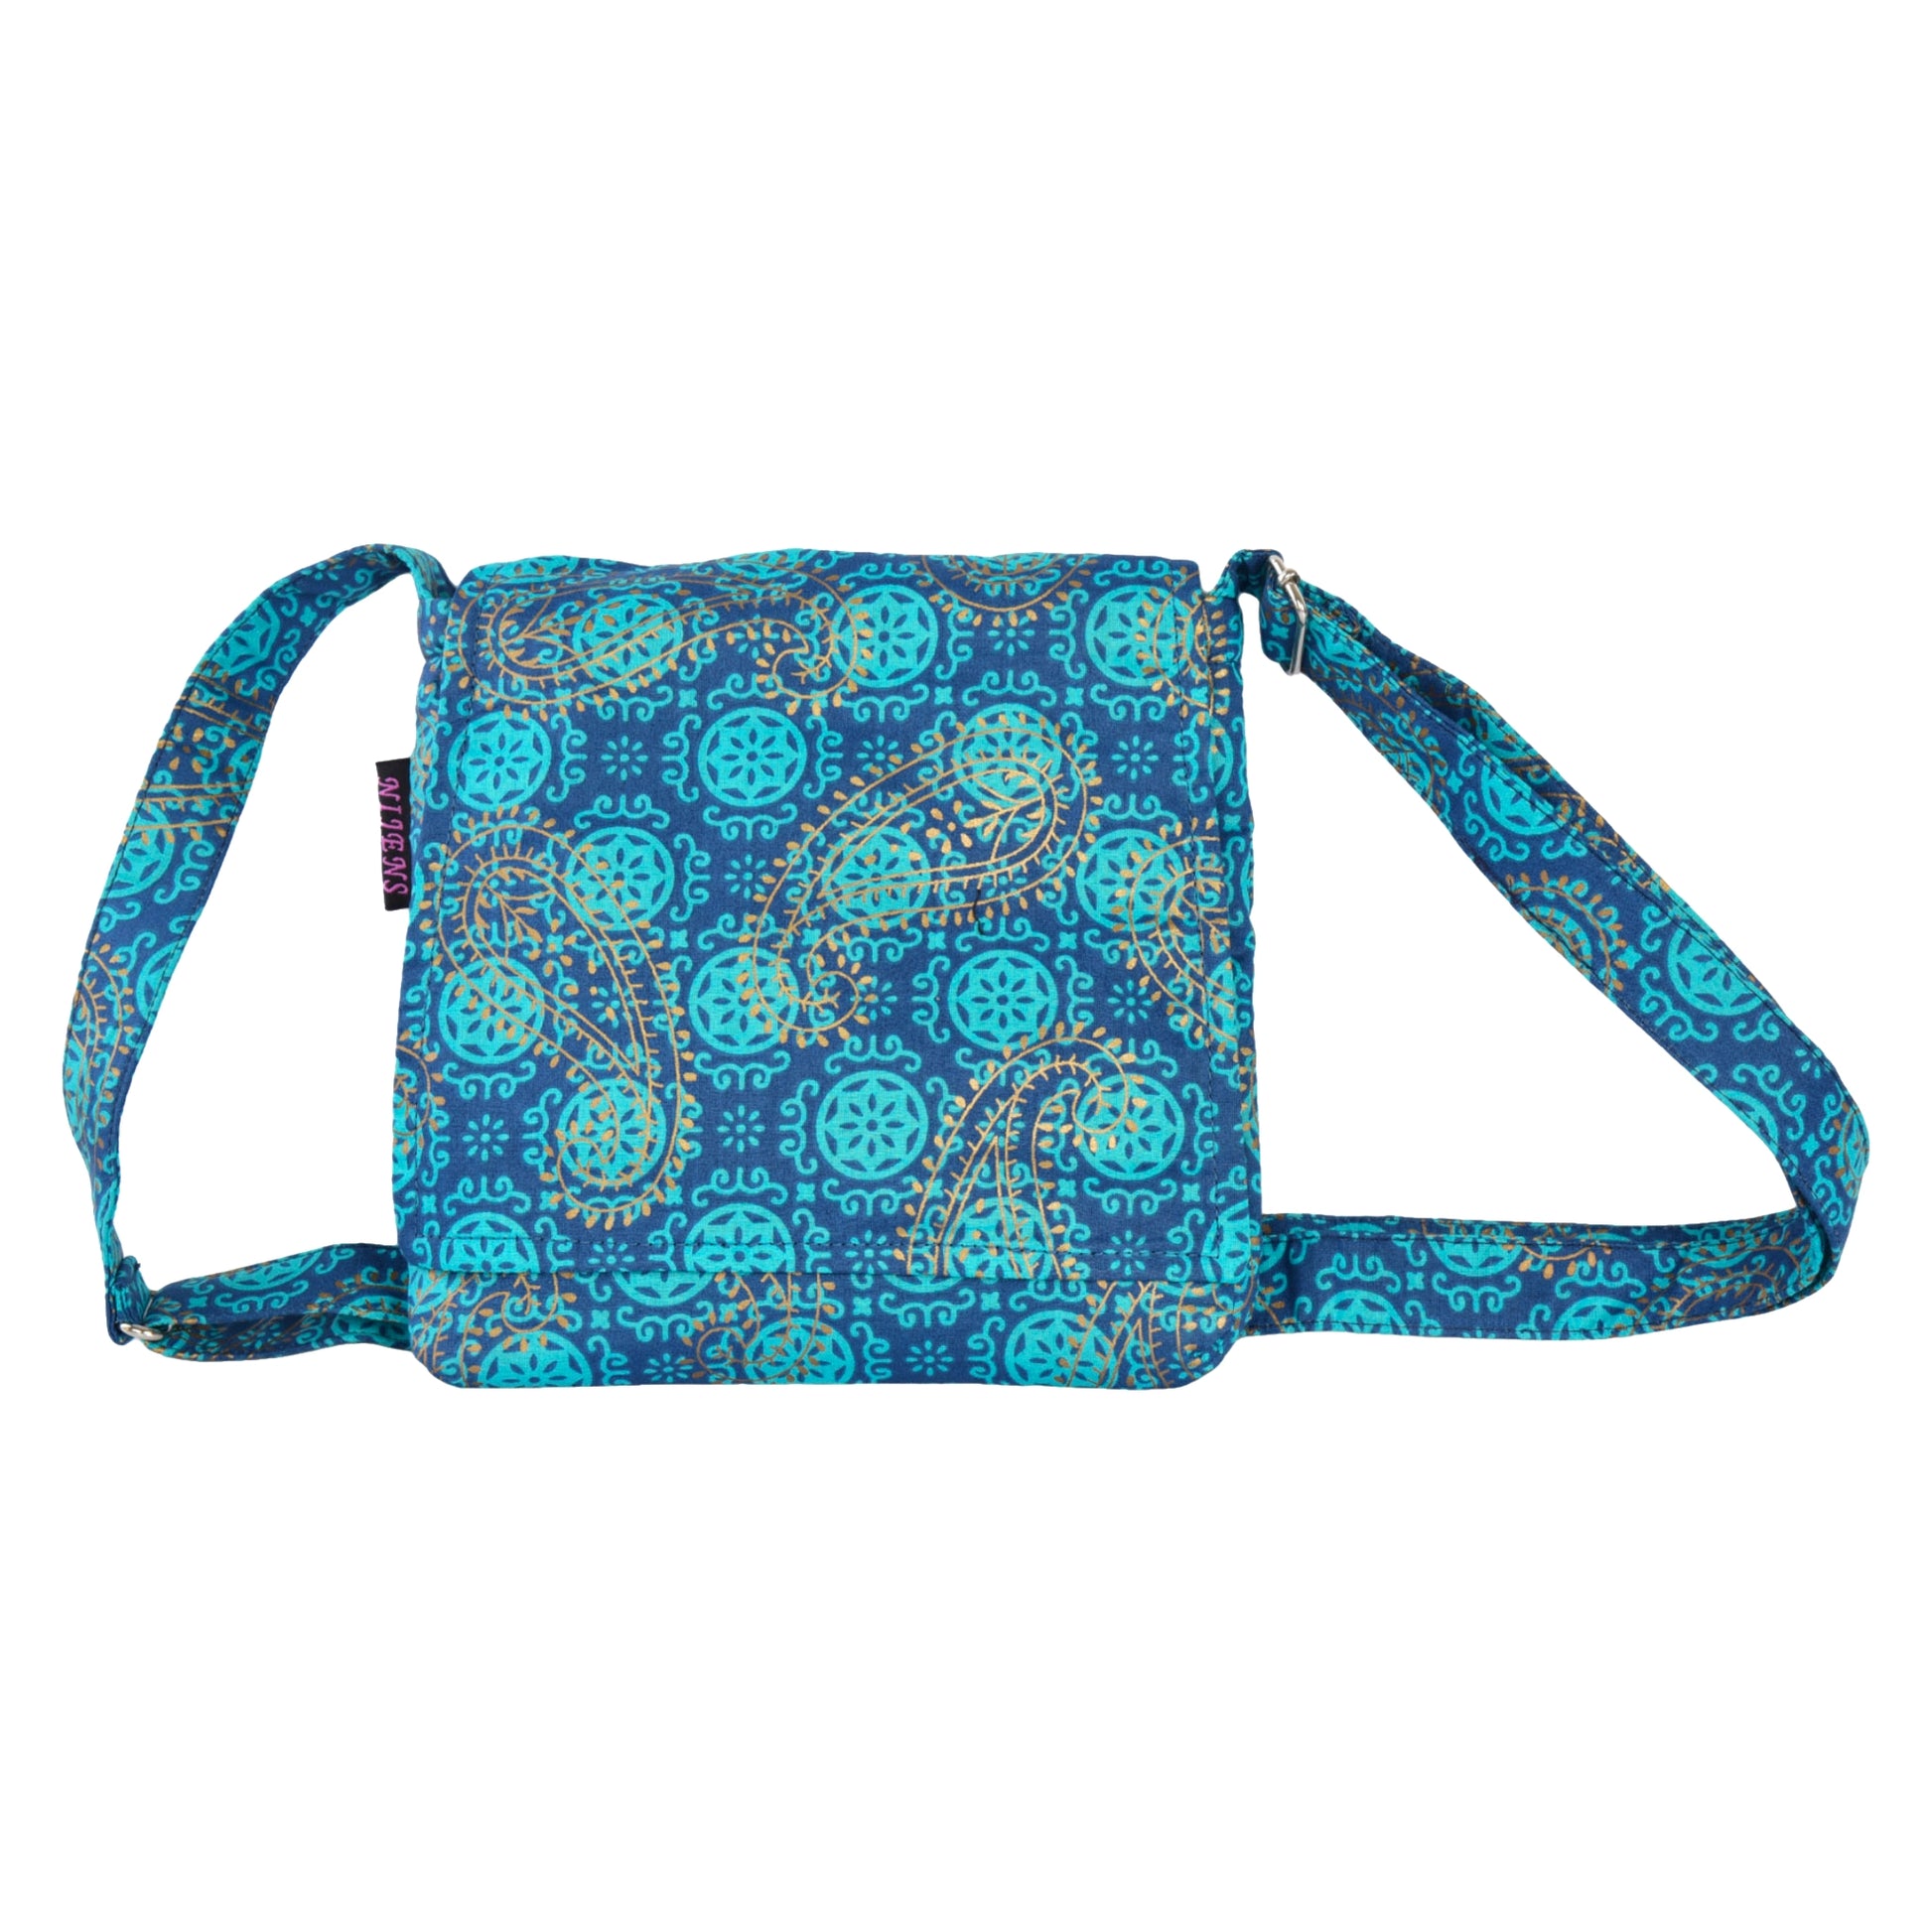 Kleine Tasche, Umhängetasche aus Baumwolle, Türkis, dunkelblau mit Muster und goldenen Paisley-Elementen.